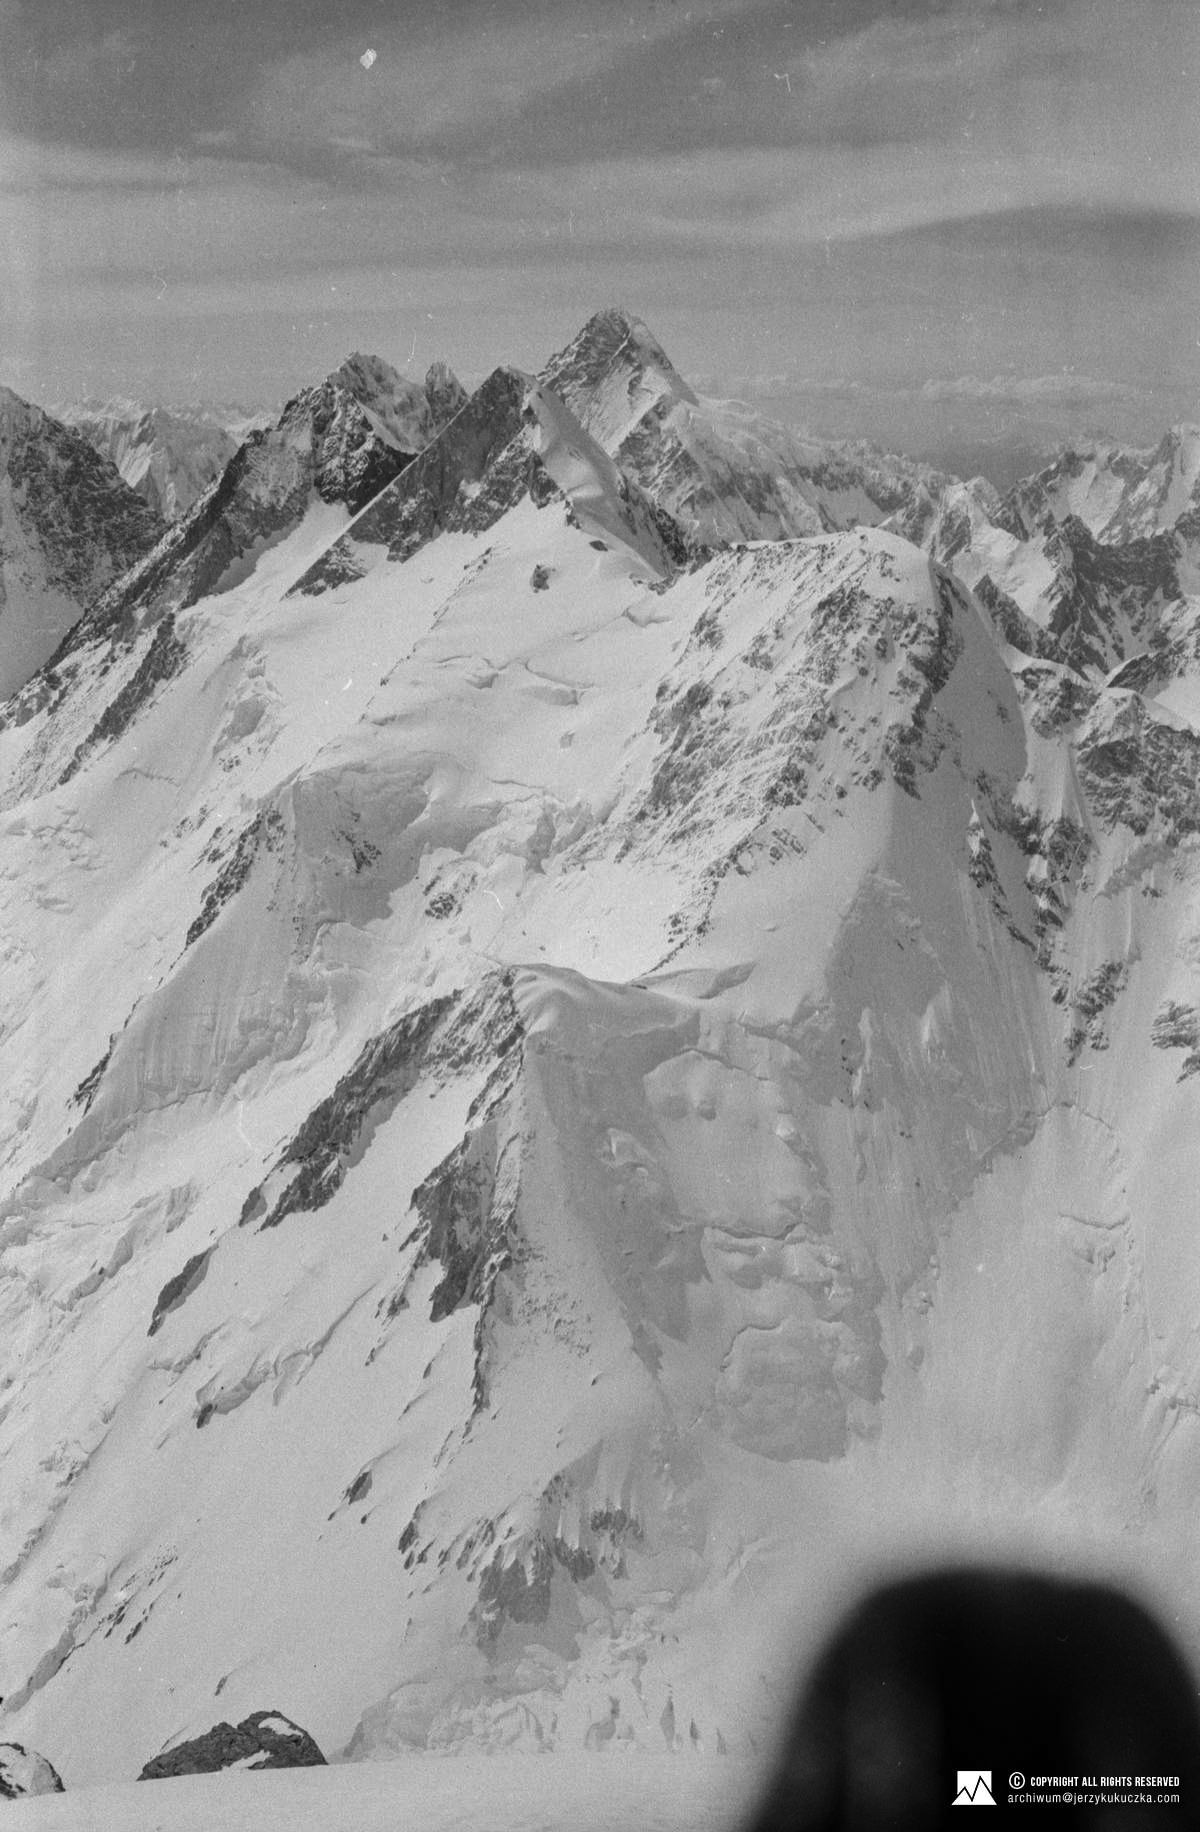 Szczyty widoczne z wierzchołka Gasherbrum I (8080 m n.p.m.). W głąb: Gasherbrum II East (7772 m n.p.m.), Gasherbrum II (8035 m n.p.m.), Gasherbrum III (7952 m n.p.m.), Broad Peak (8051 m n.p.m.) oraz K2 (8611 m n.p.m.).